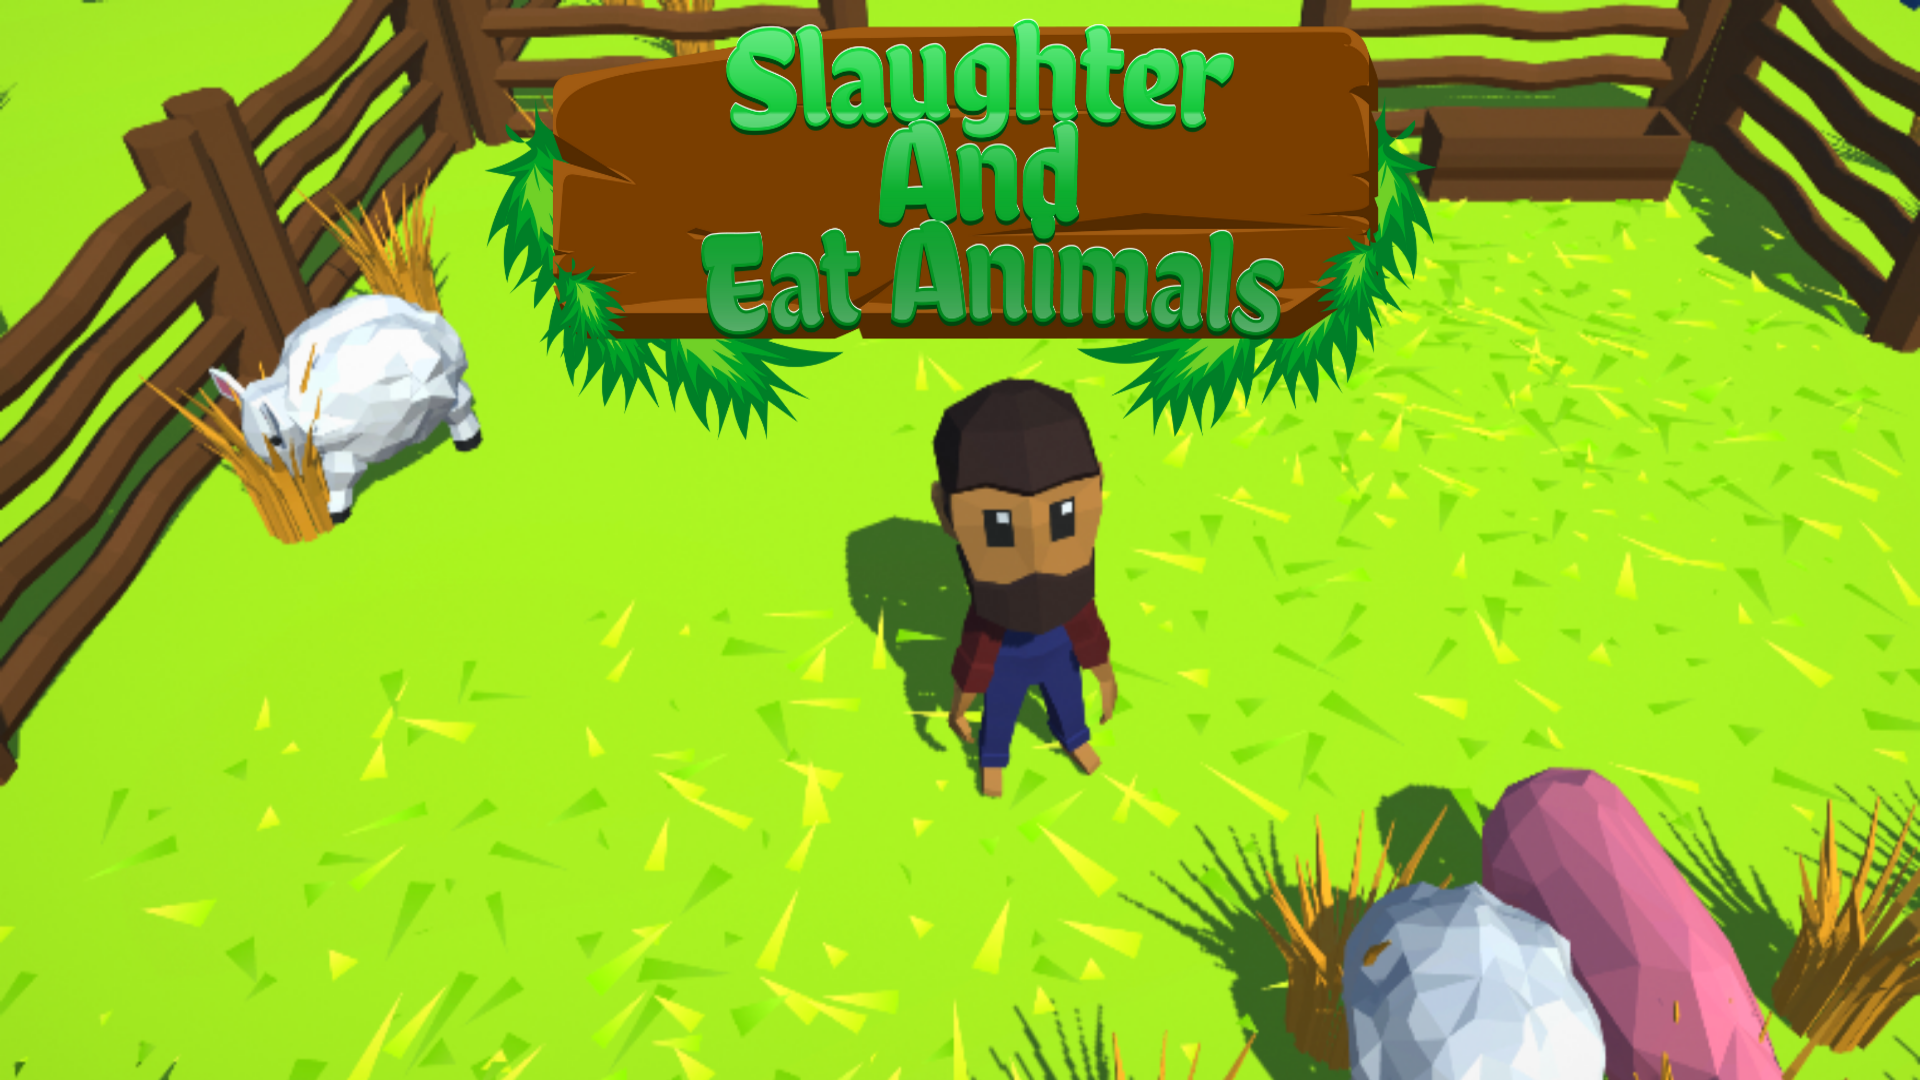 Screenshot of Crazy Farming Simulation